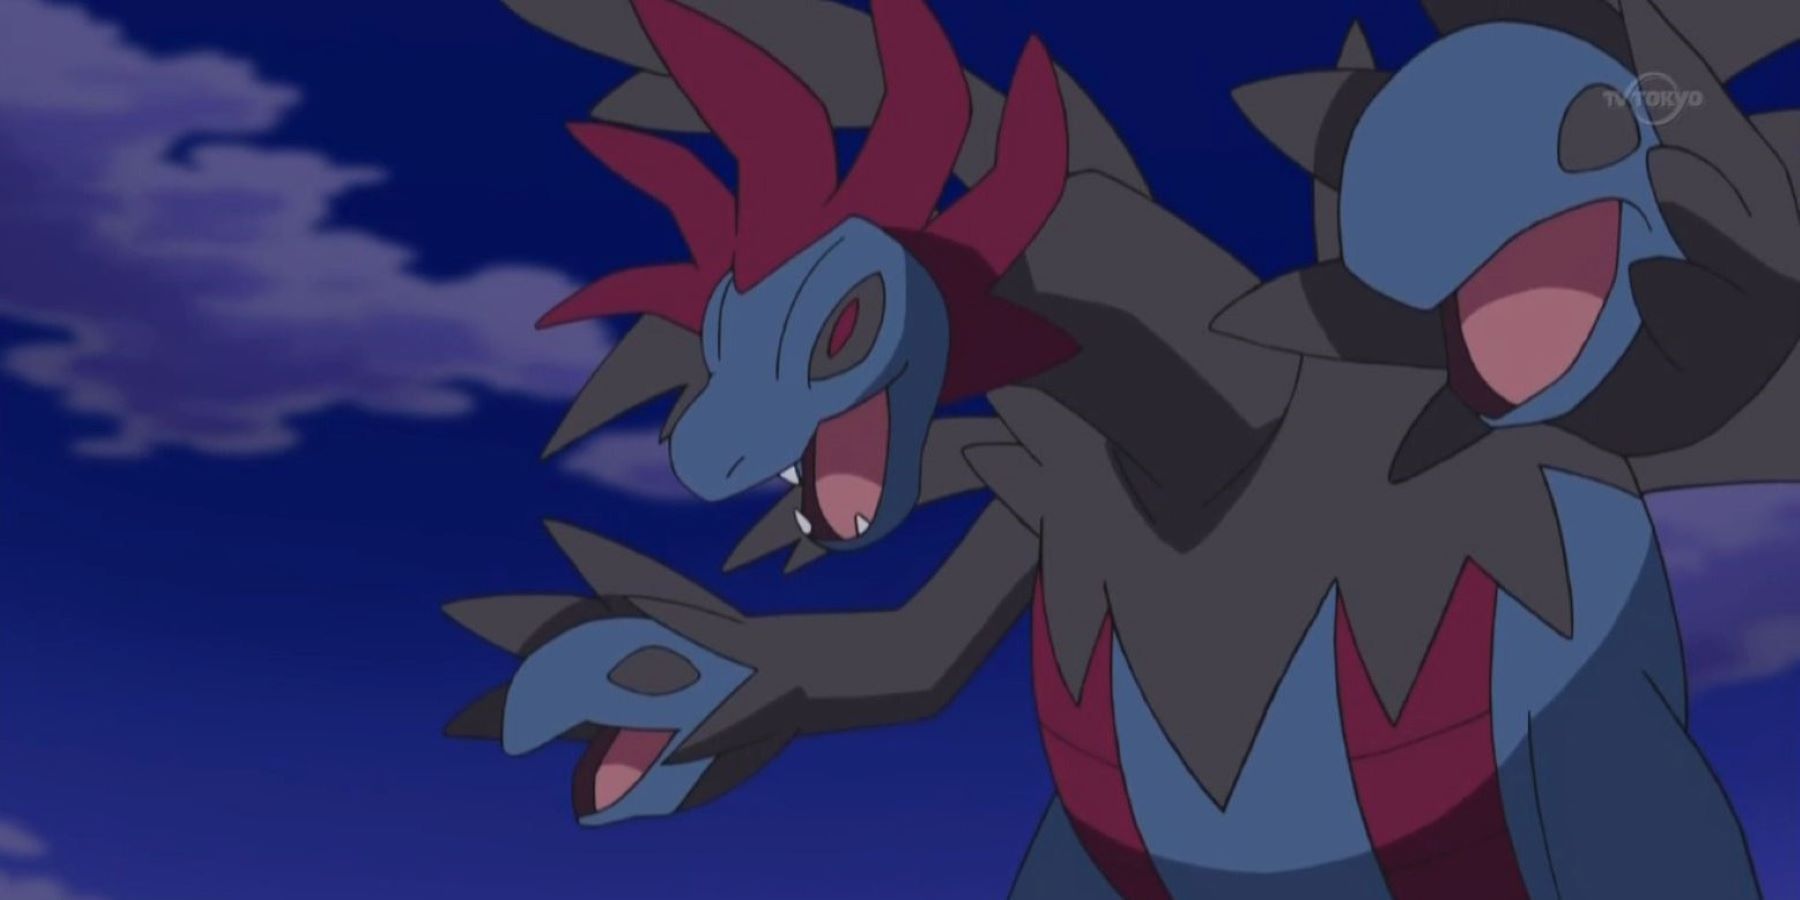 A flying Hydreigon in the Pokémon anime